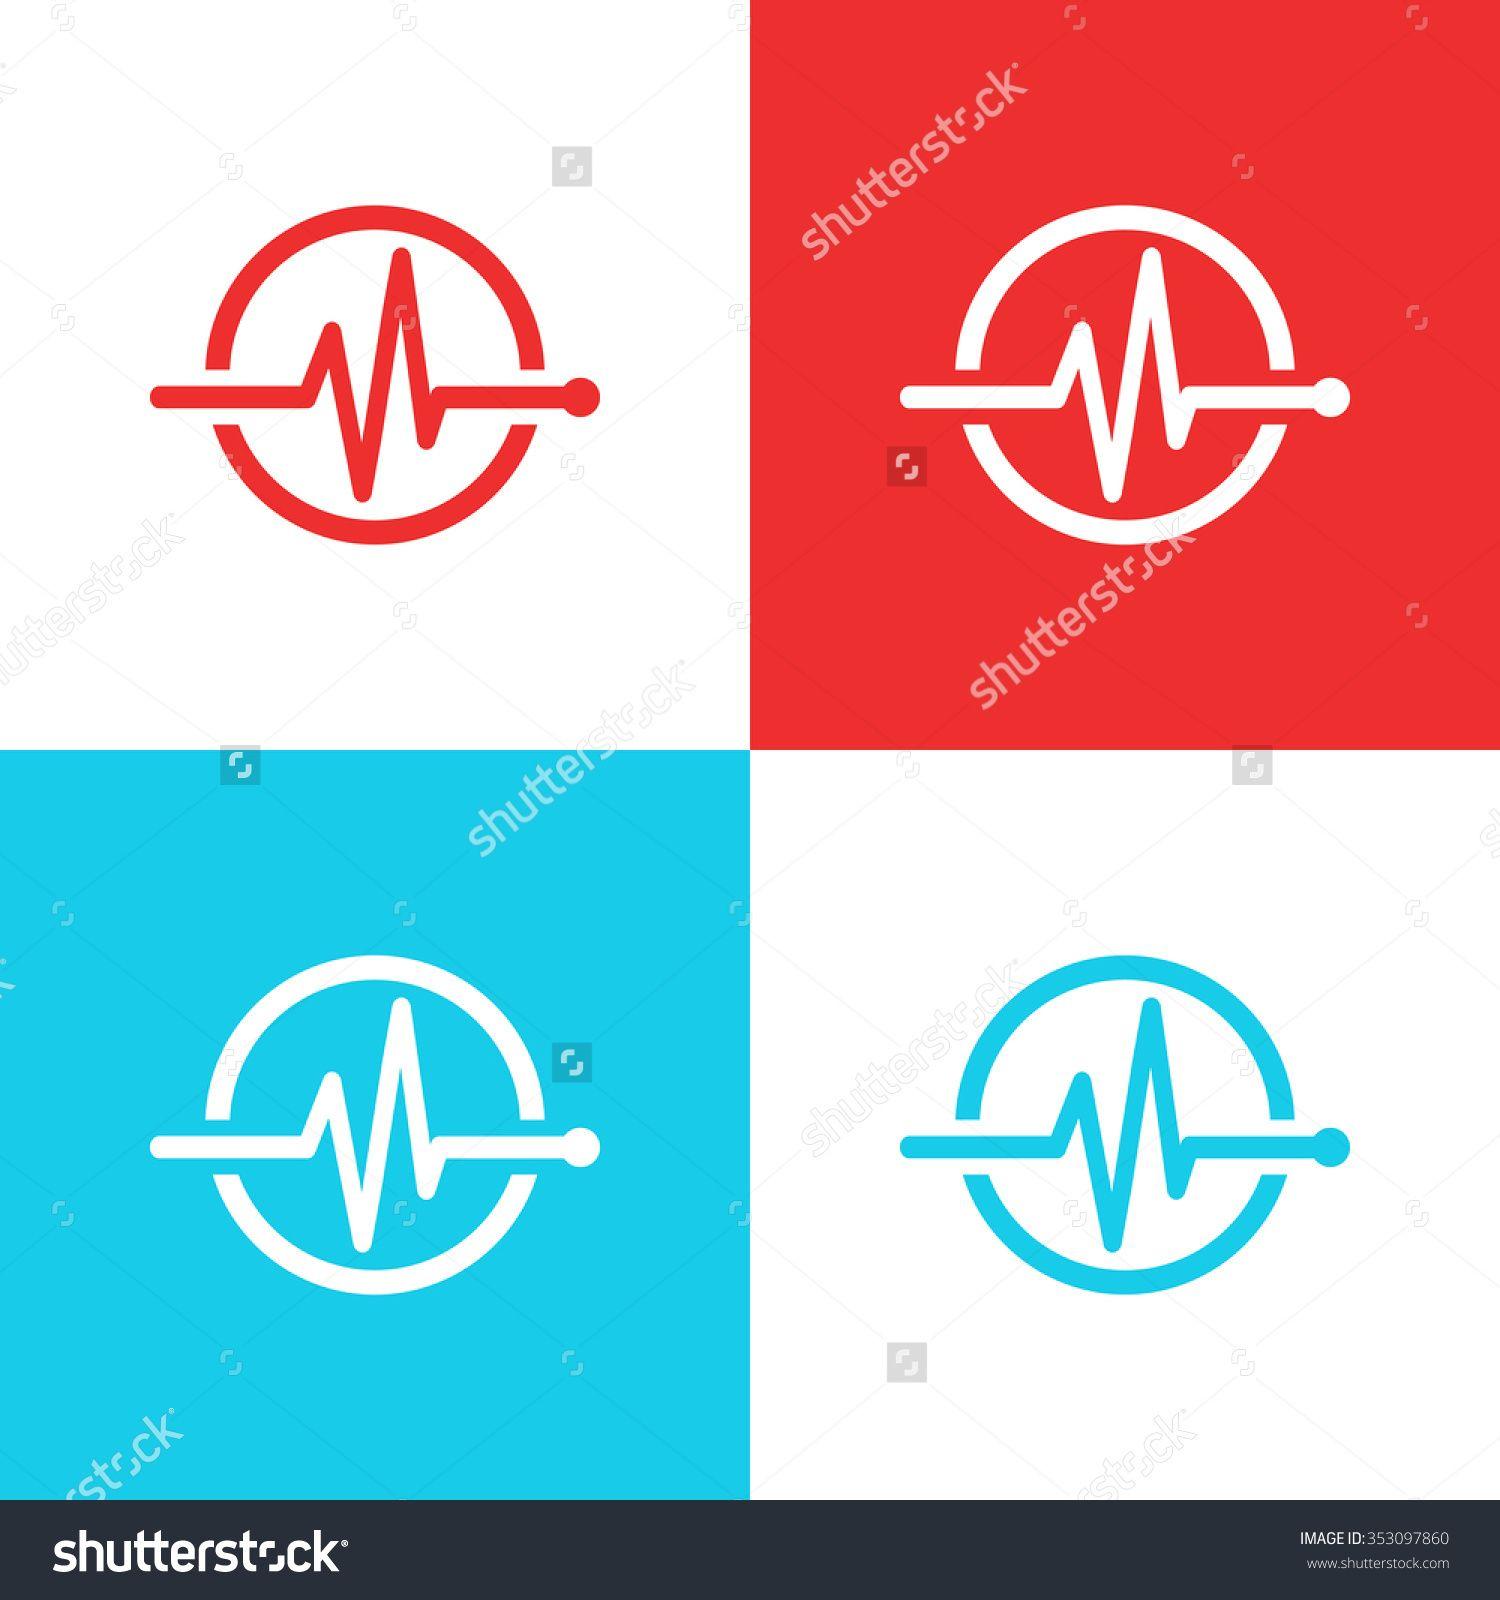 Stock Medical Logo - Medical Logo Concept Health Care Design Stock Vector 353097860